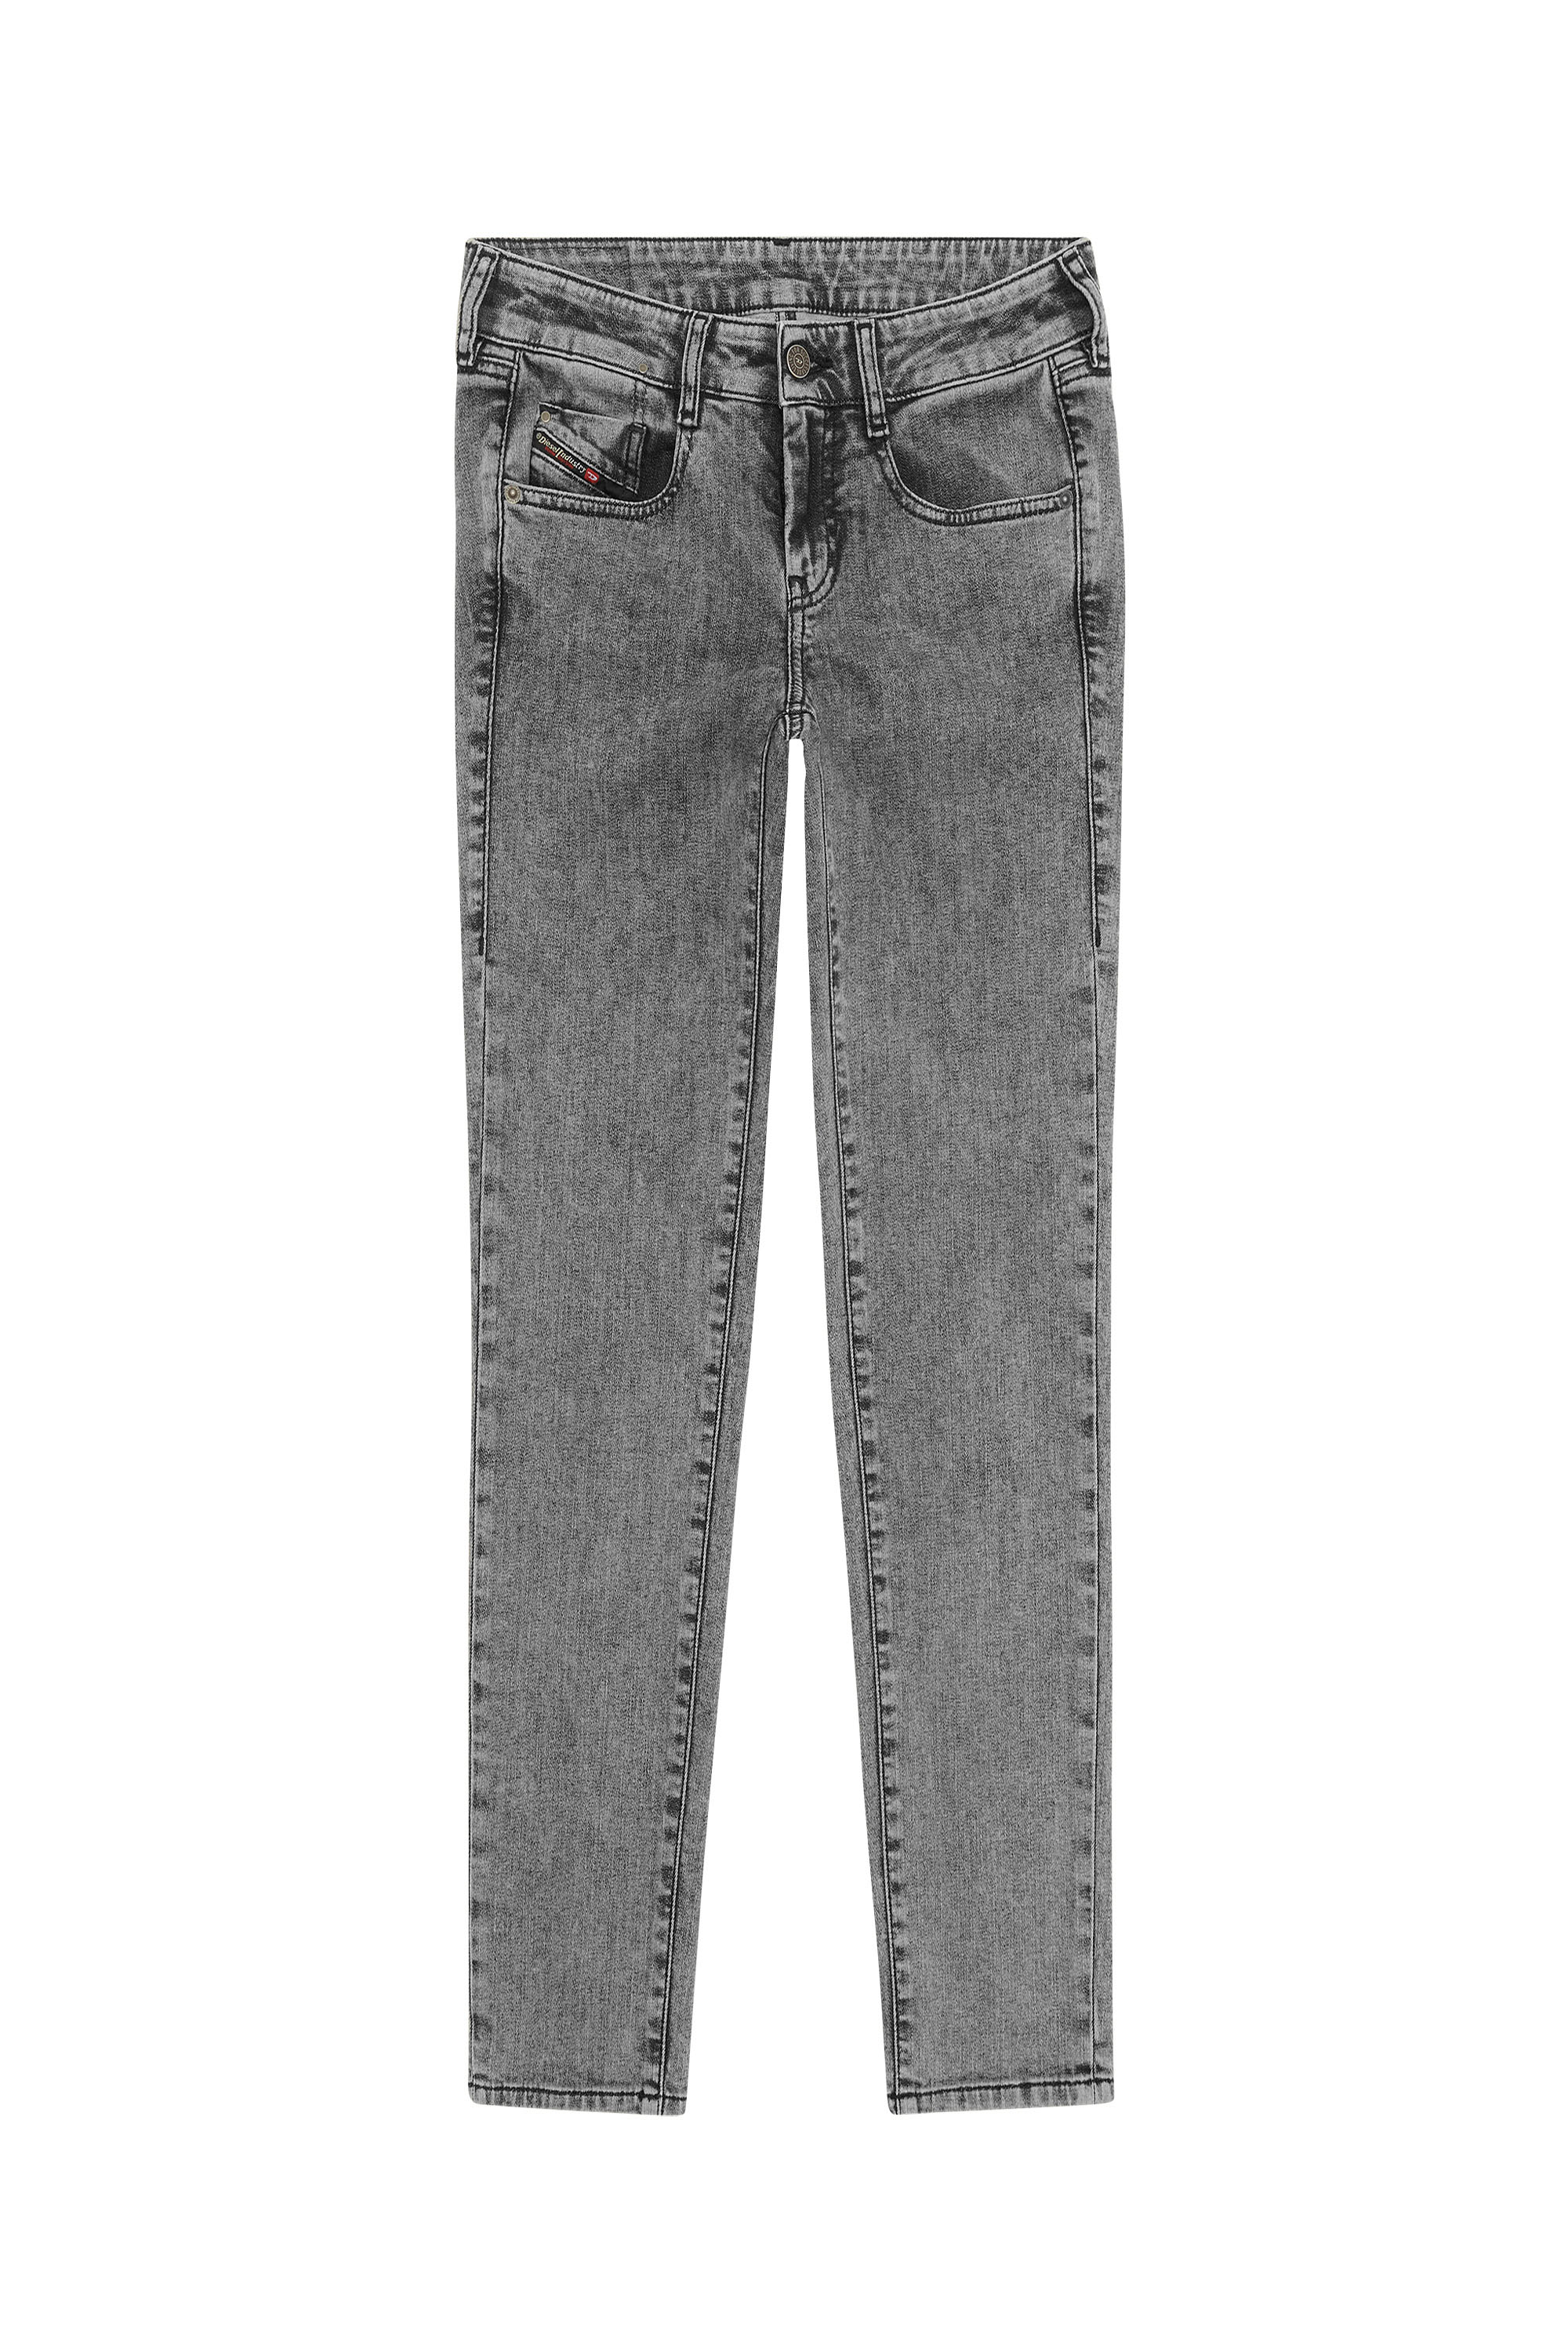 Diesel - D-Ollies JoggJeans® 09D07 Slim, Black/Dark grey - Image 6